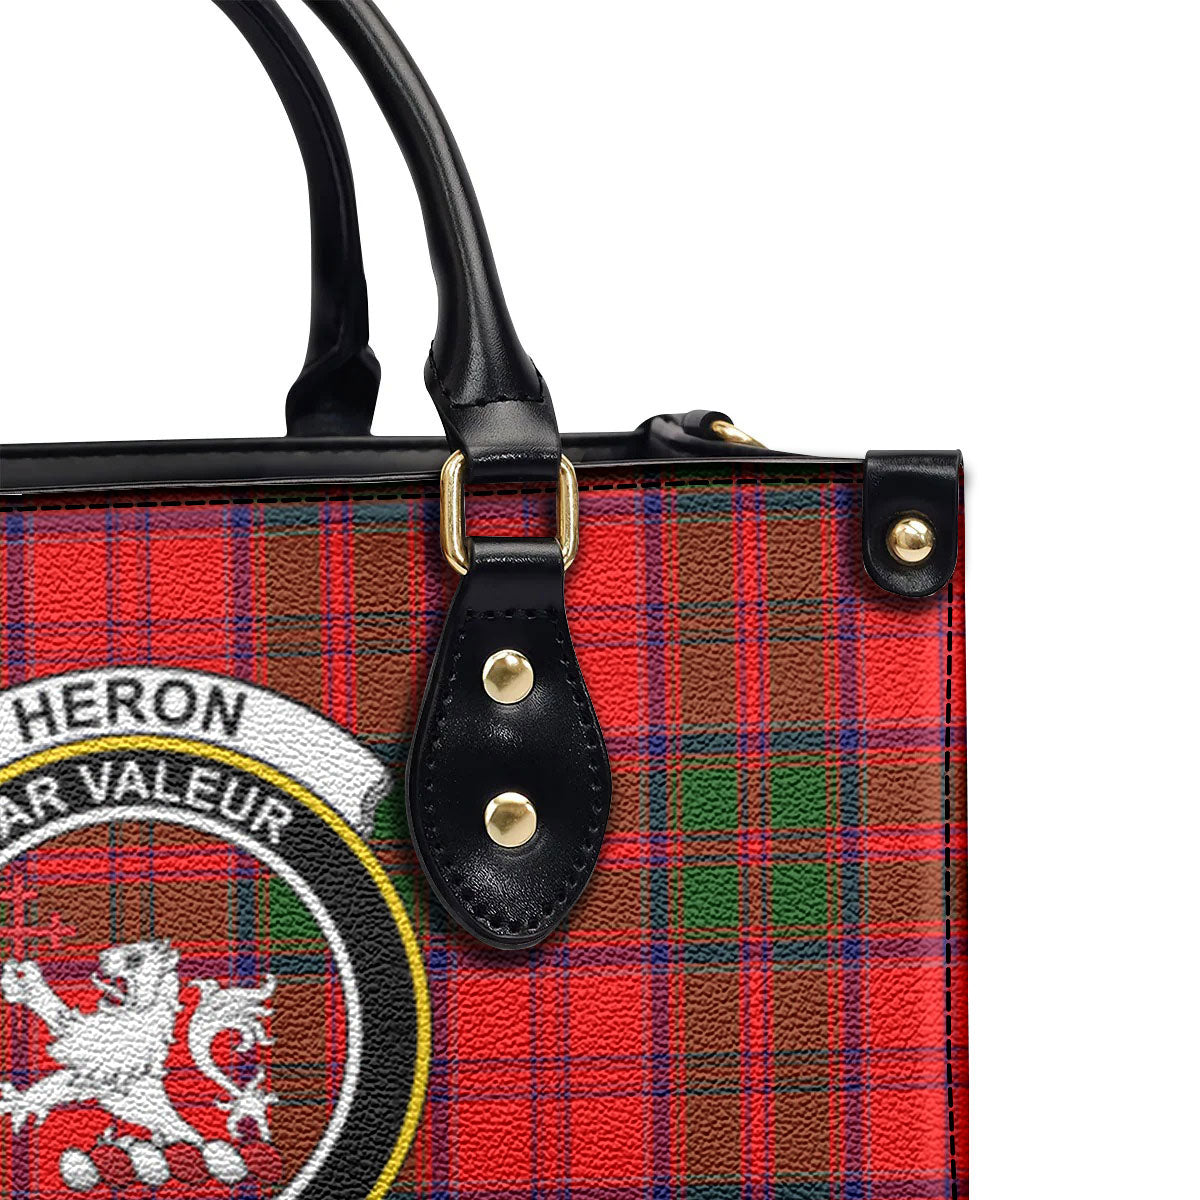 Heron Tartan Crest Leather Handbag